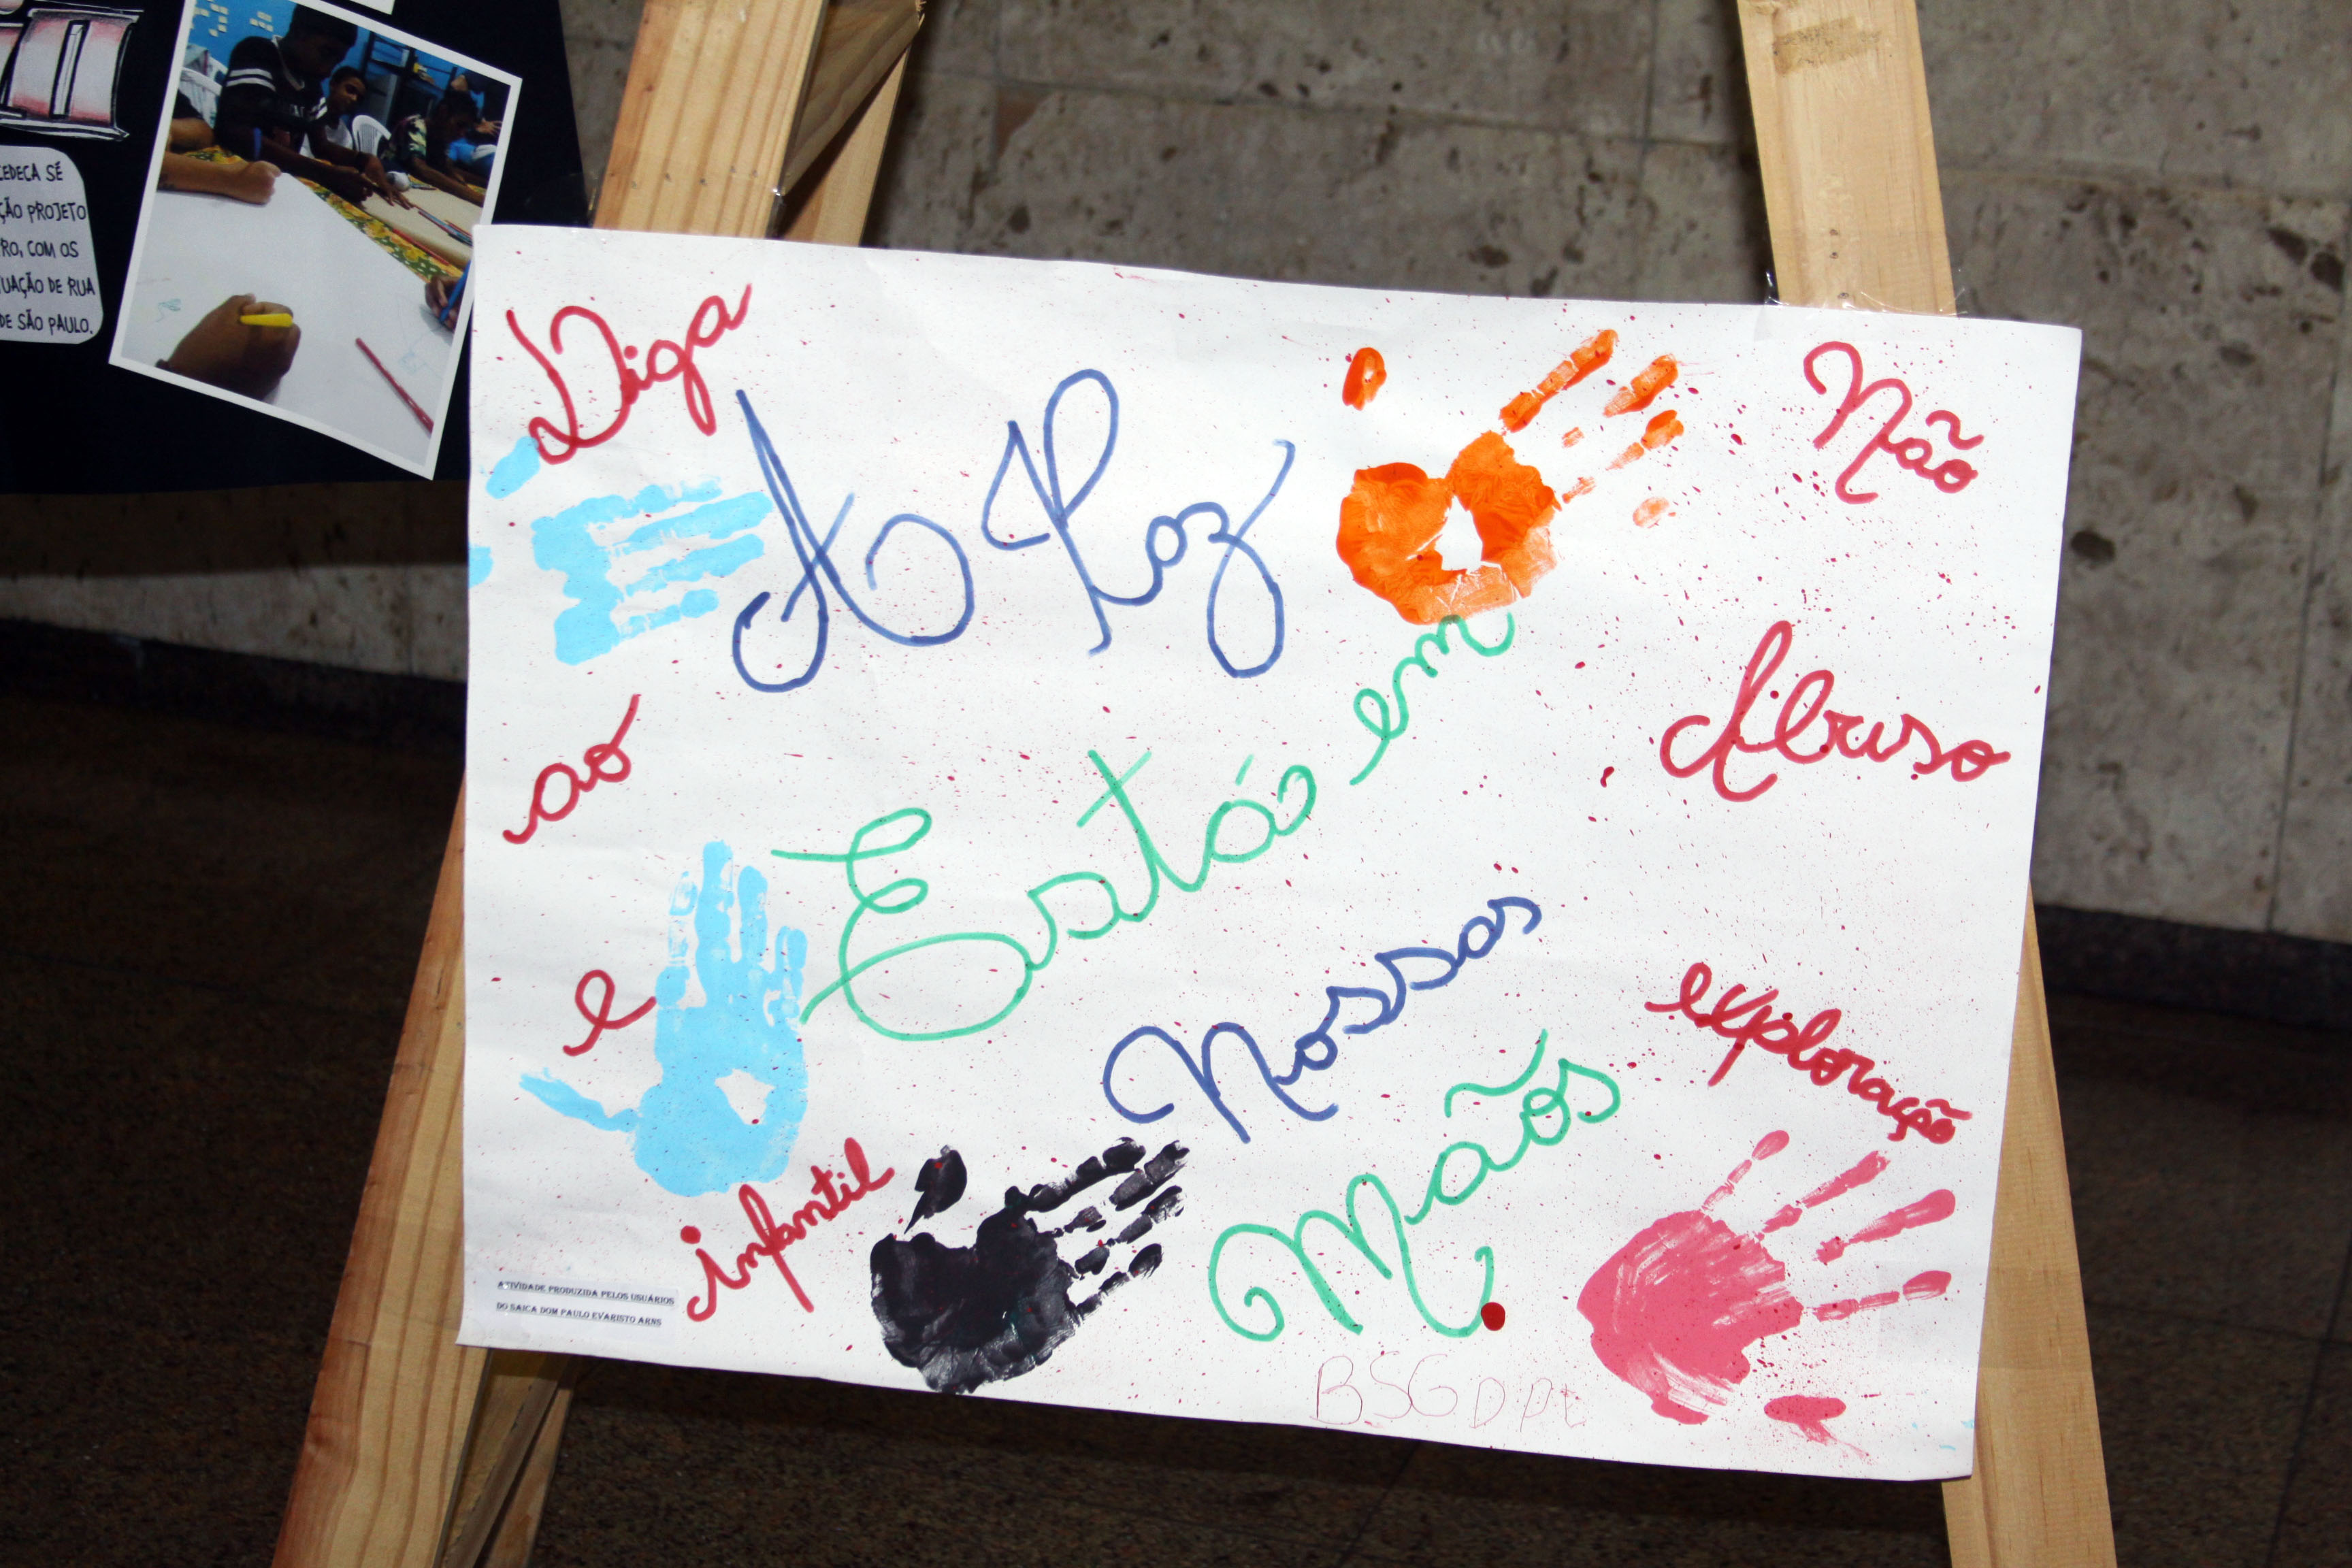 Cartaz feito por crianças e adolescentes, que está escrito "Diga não ao abuso e a exploração infantil" misturado com a frase "A paz está nossas mãos". Junto, há marcas de mãos pintadas com tinta.